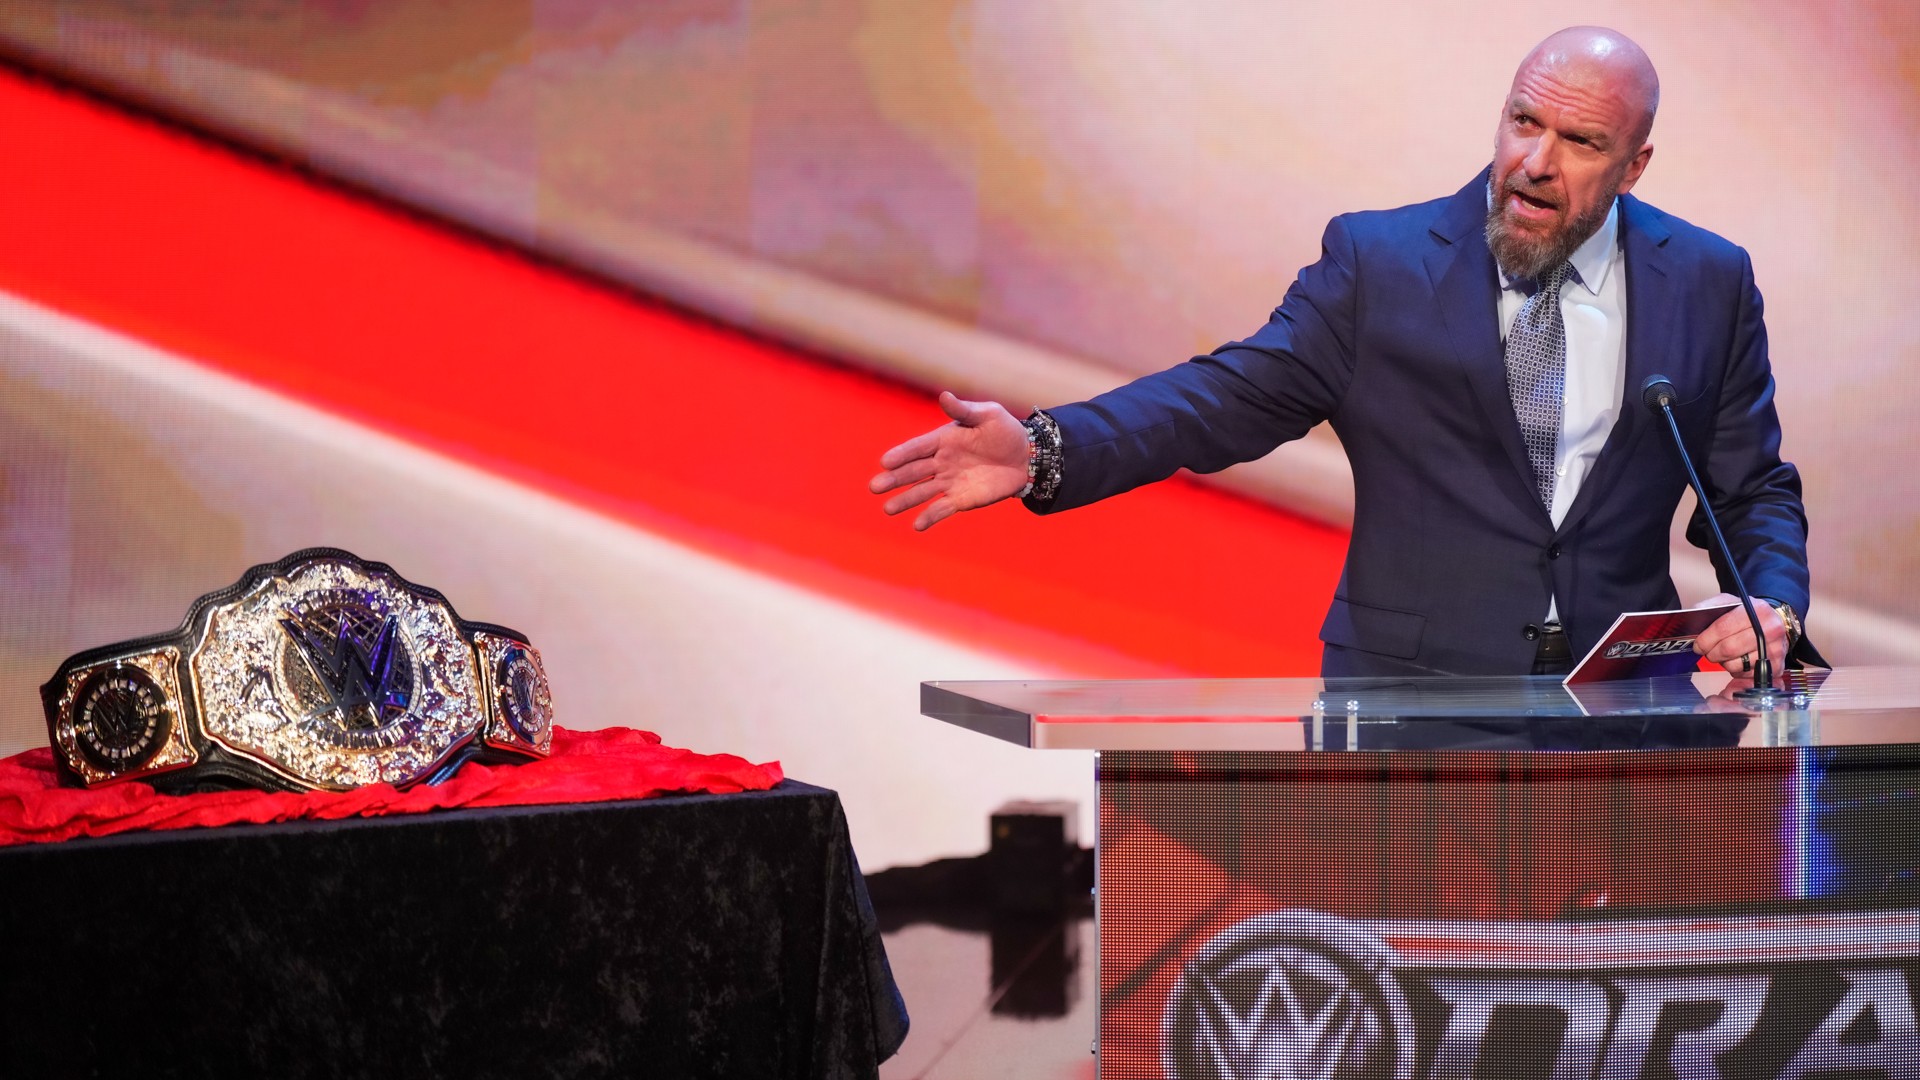 Revelada a reação dos bastidores da WWE após Draft